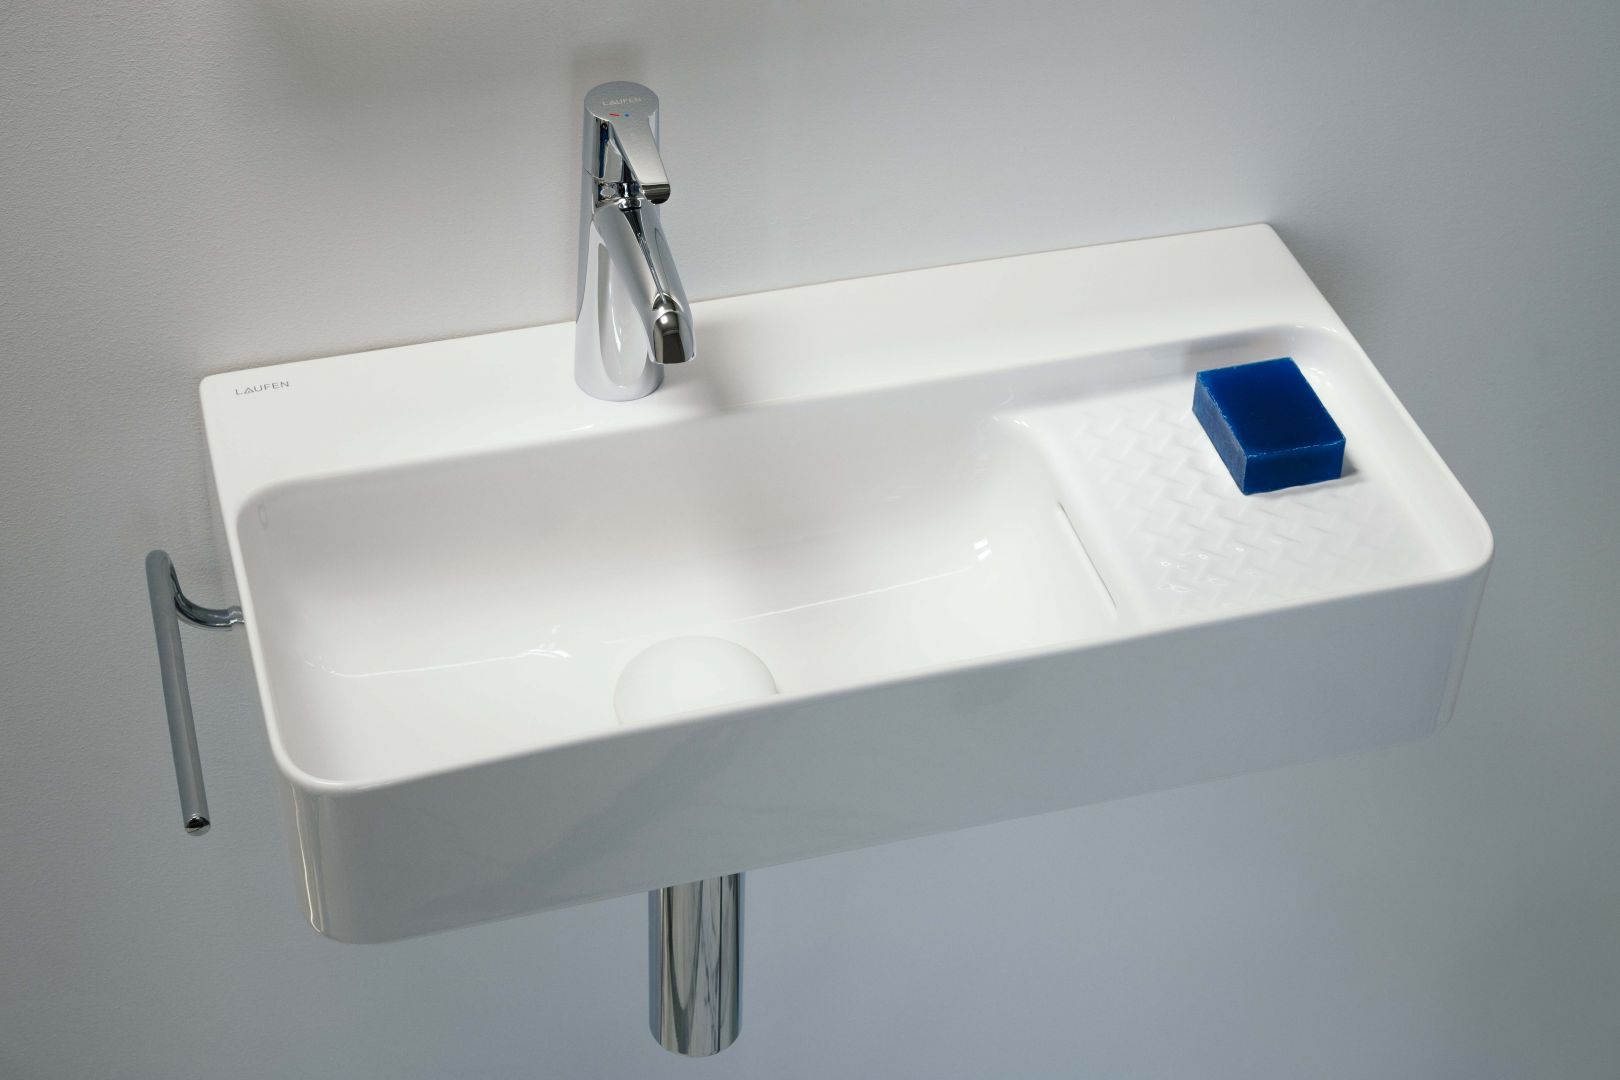 Umywalka z serii VAL zaprojektowana przez Konstantina Grcica to idealny wybór do małej łazienki. Na zdjęciu umywalka cienkościenna na bazie prostokąta o zaoblonych kątach, która wyposażona została w praktyczną półkę. Fot. Laufen